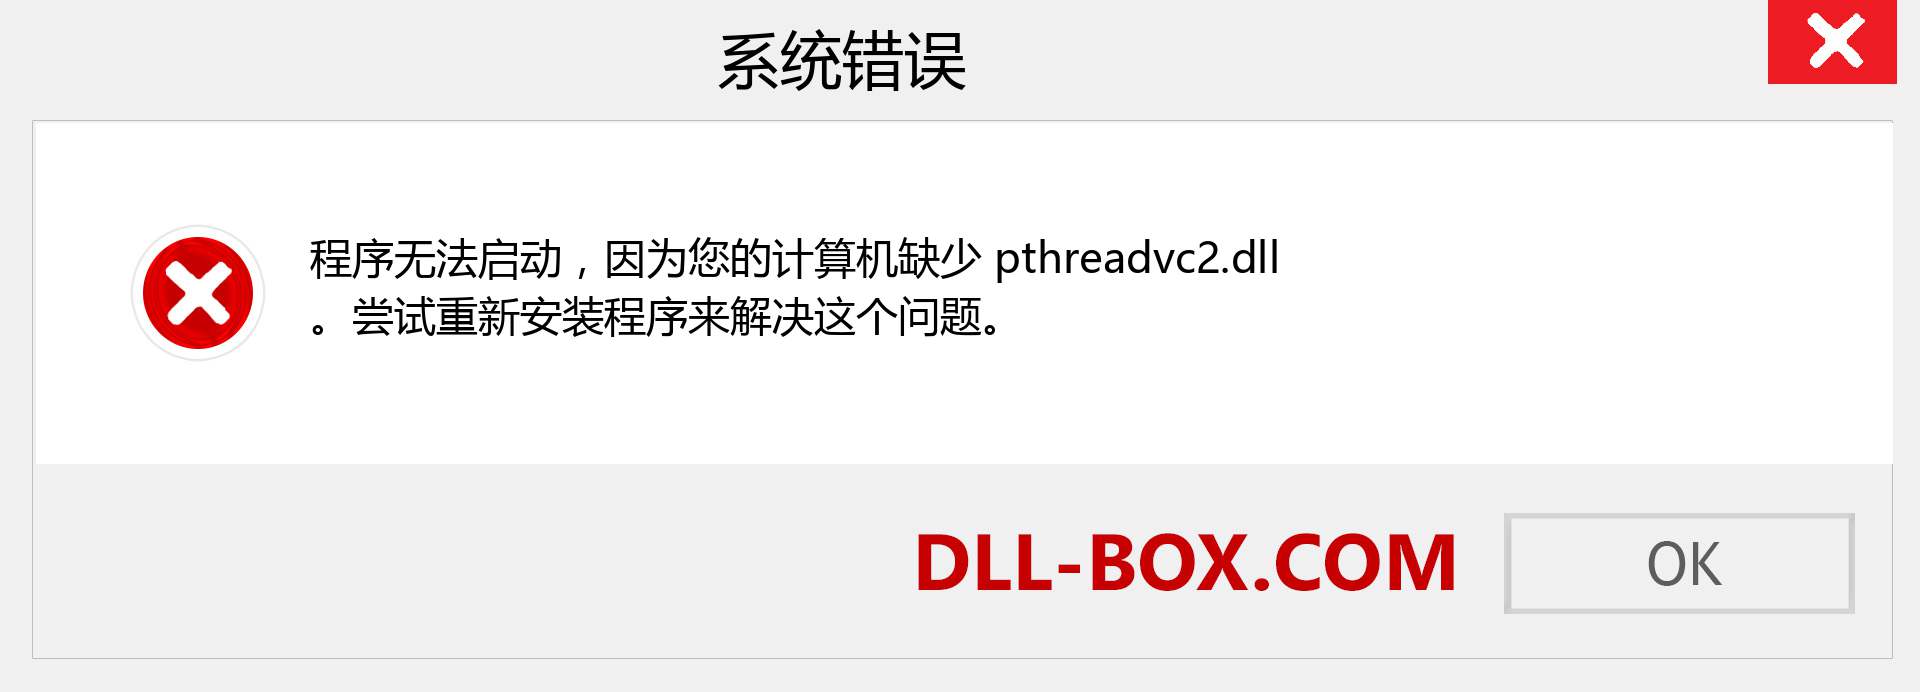 pthreadvc2.dll 文件丢失？。 适用于 Windows 7、8、10 的下载 - 修复 Windows、照片、图像上的 pthreadvc2 dll 丢失错误